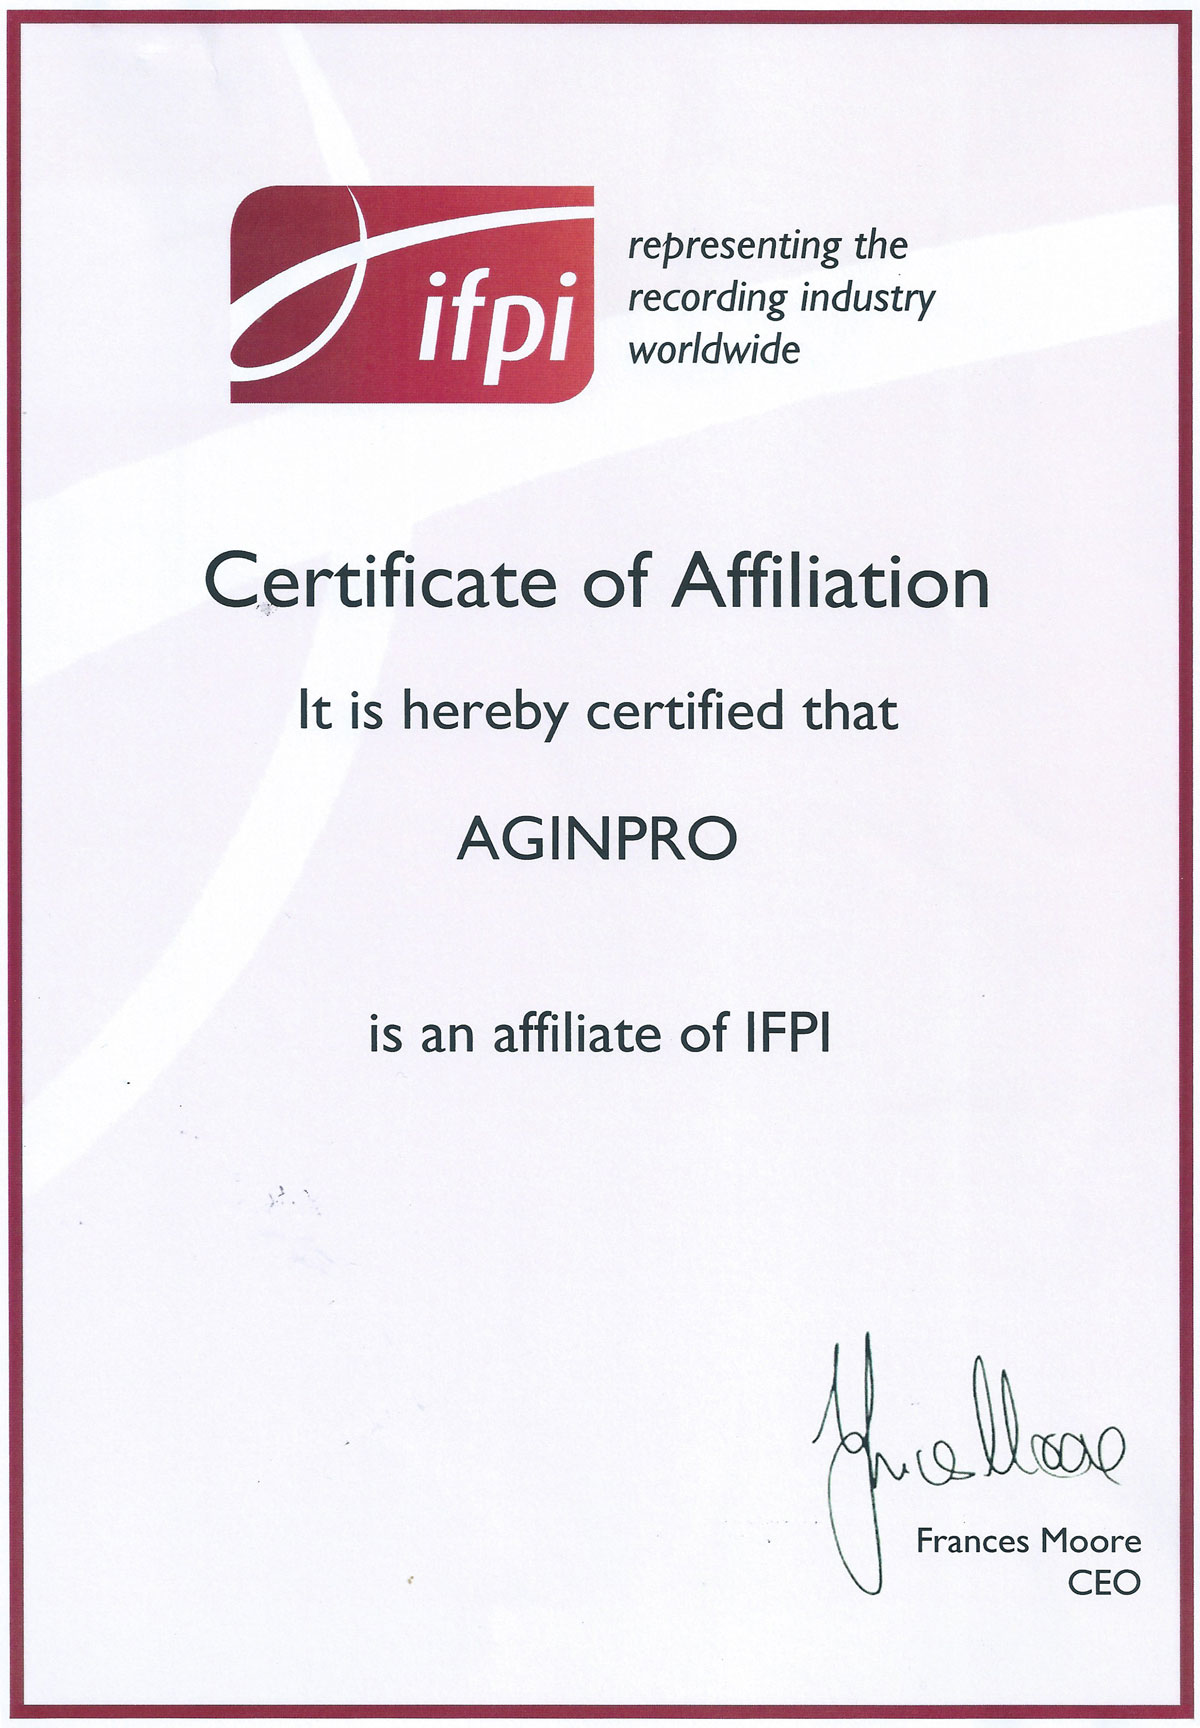 IFPI CERTIFICATE